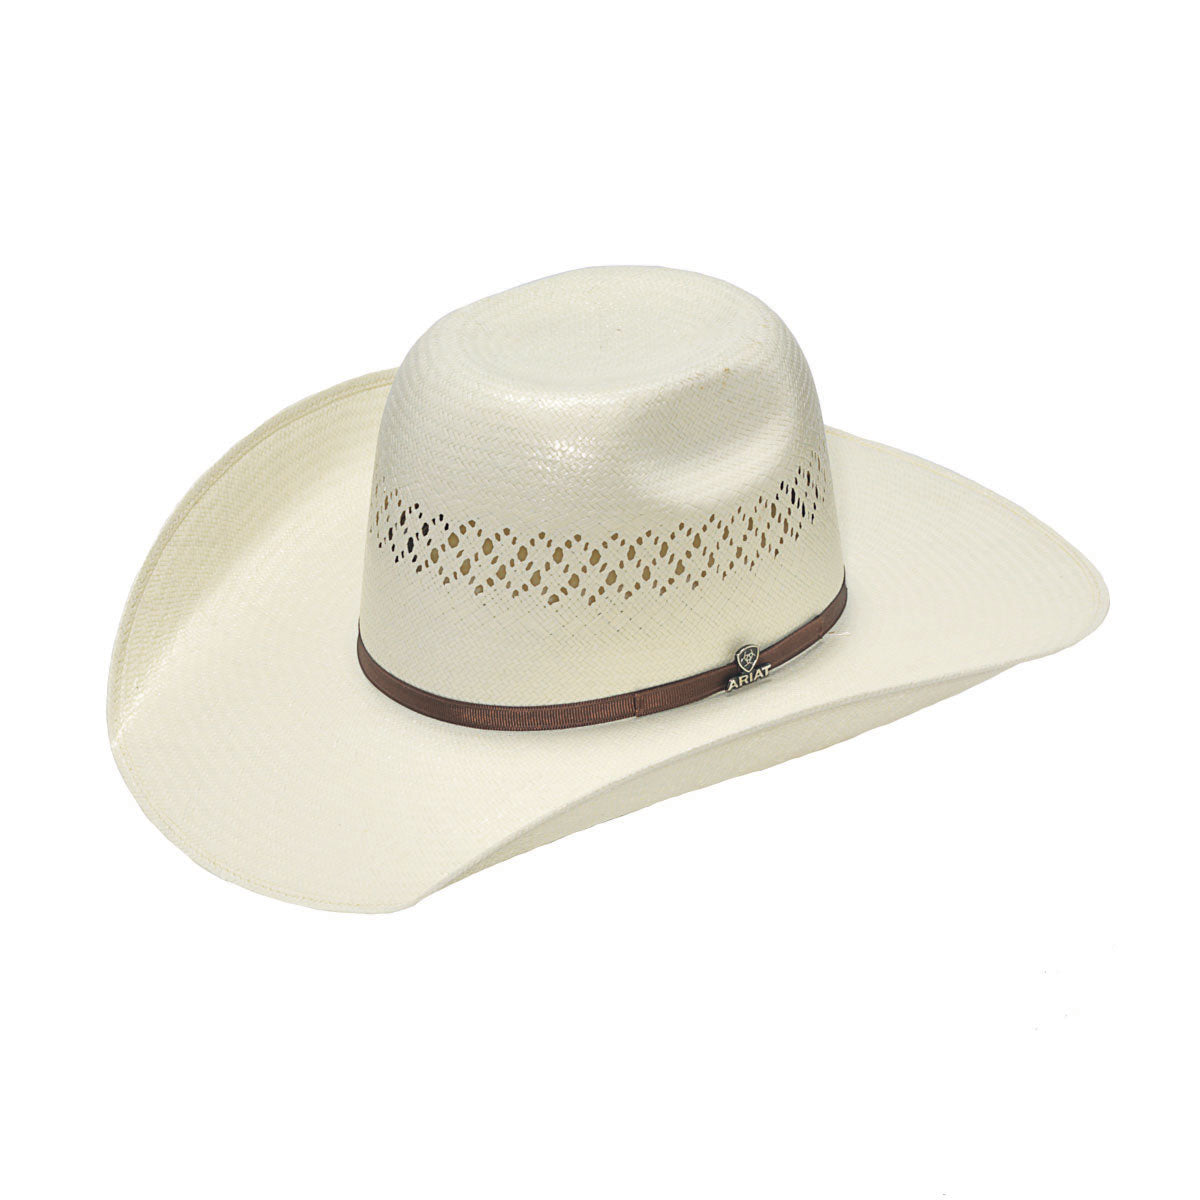 Ariat 8X Shantung Straw Cowboy Hat